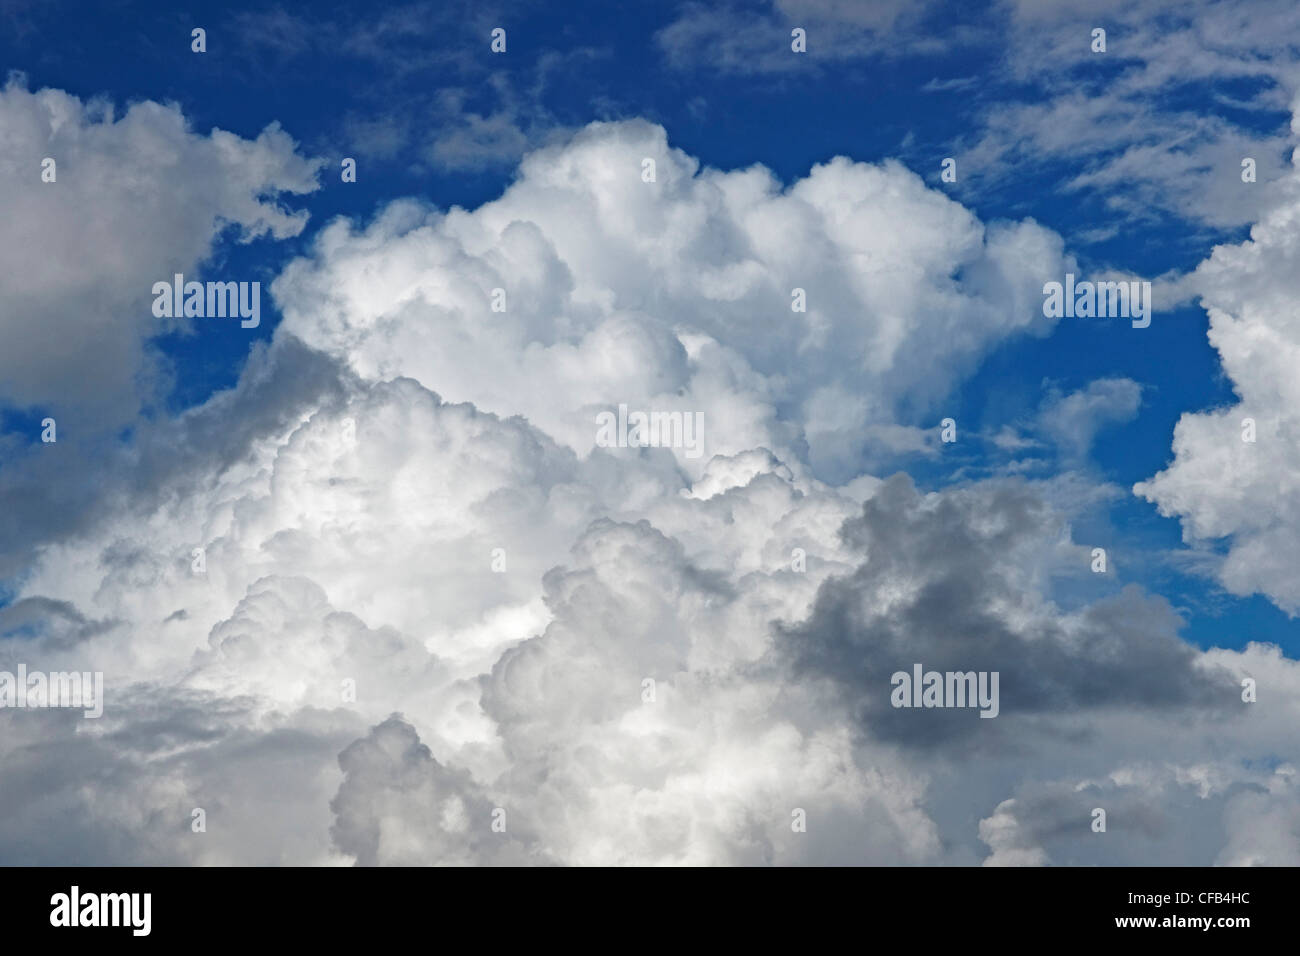 Europe, Portugal, Republica Portuguesa, Madeira, Ponta Delgada, street, imposingly, cloud formation, clouds, sky, Stock Photo